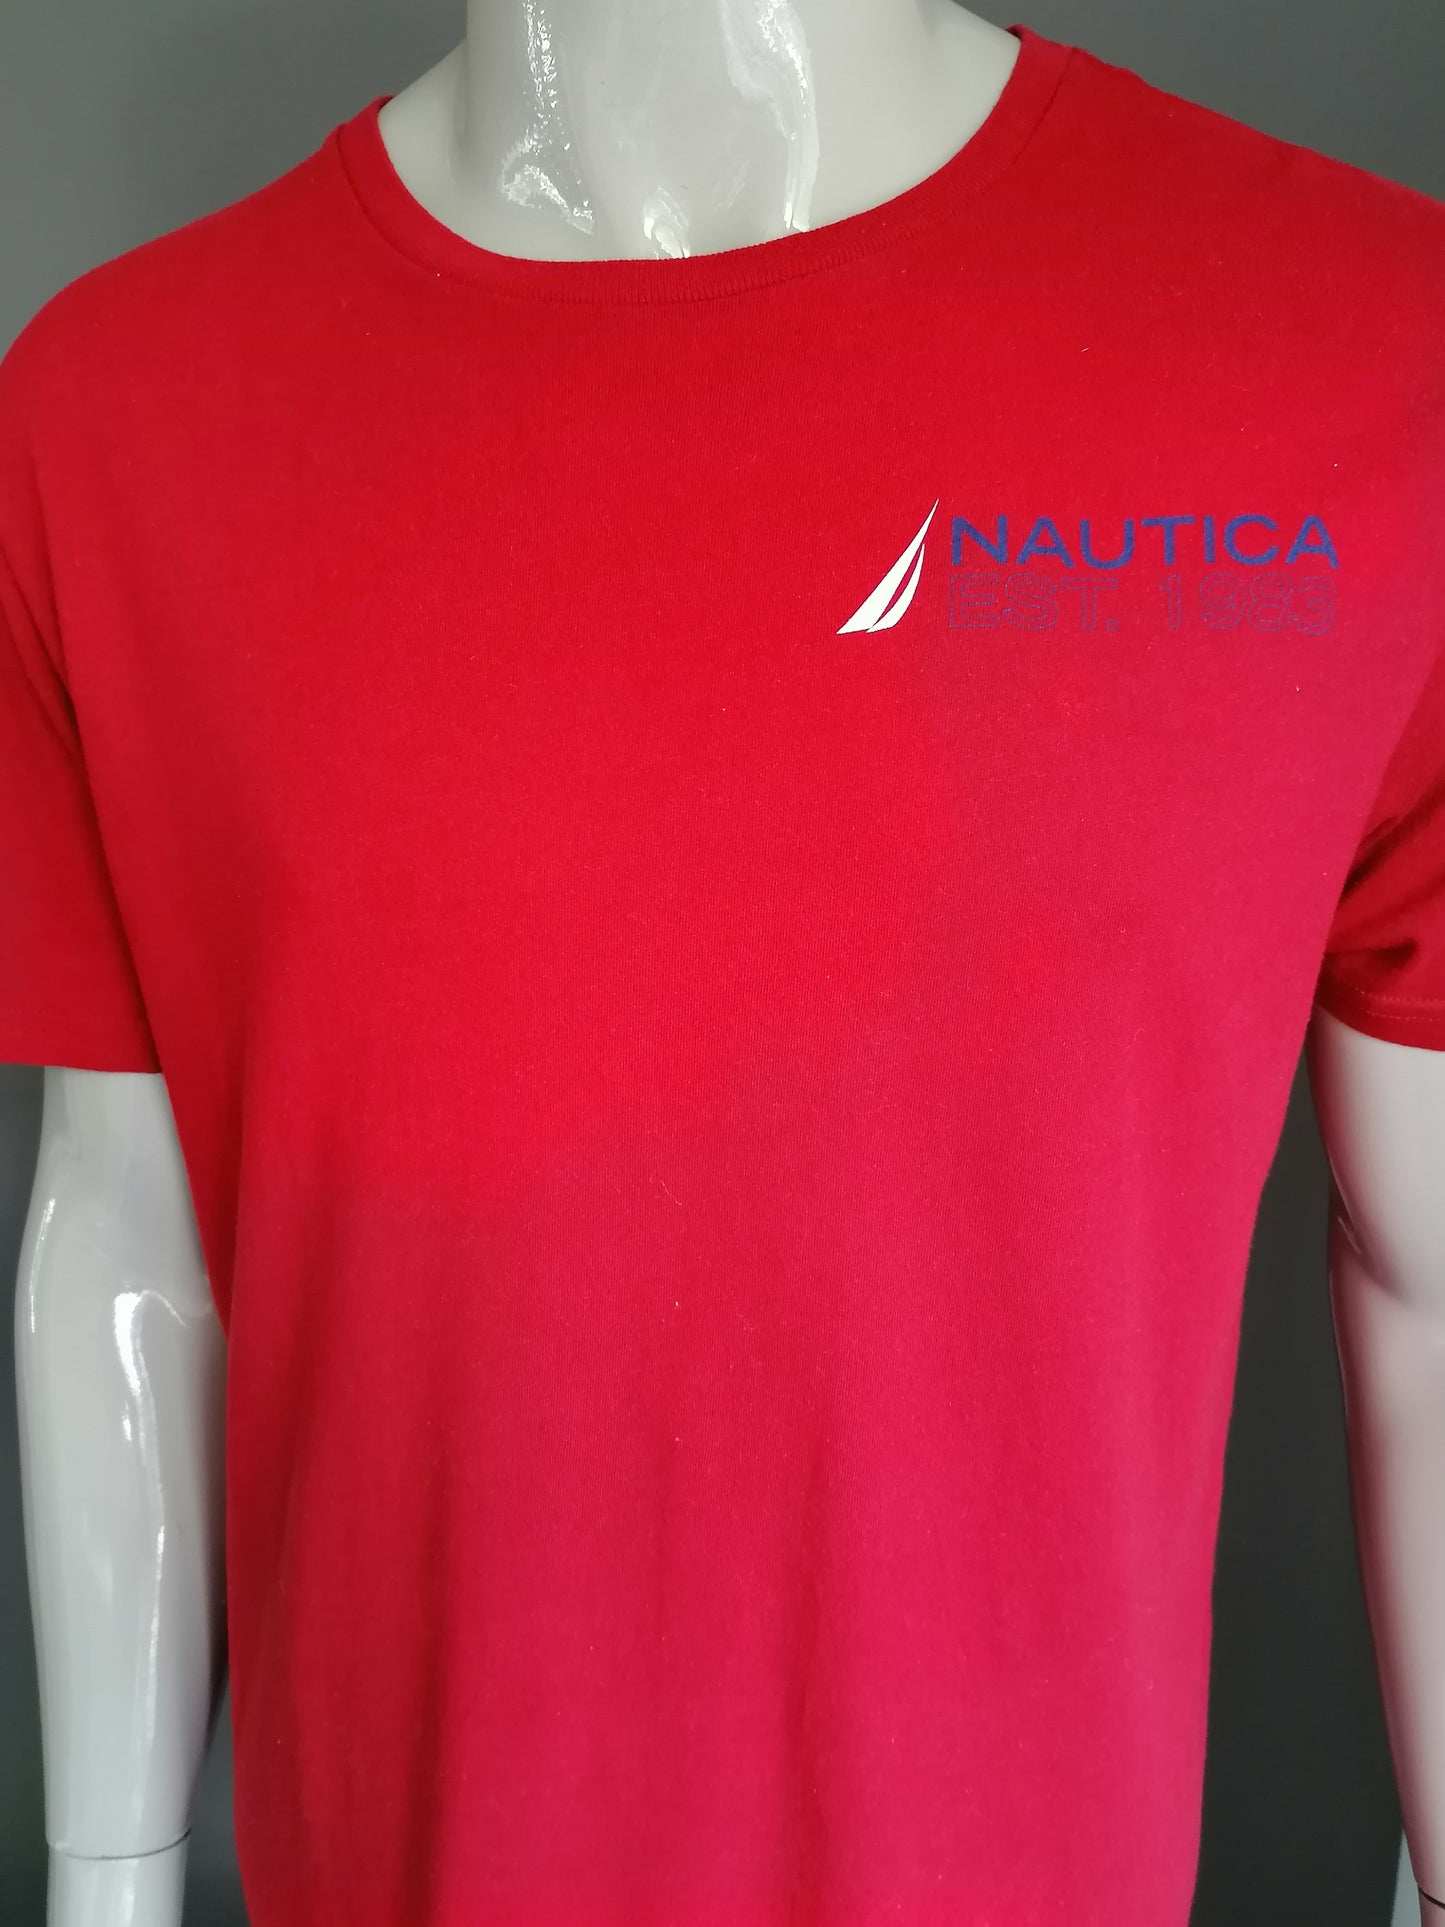 Nautica shirt. Rood met opdruk. Maat L.